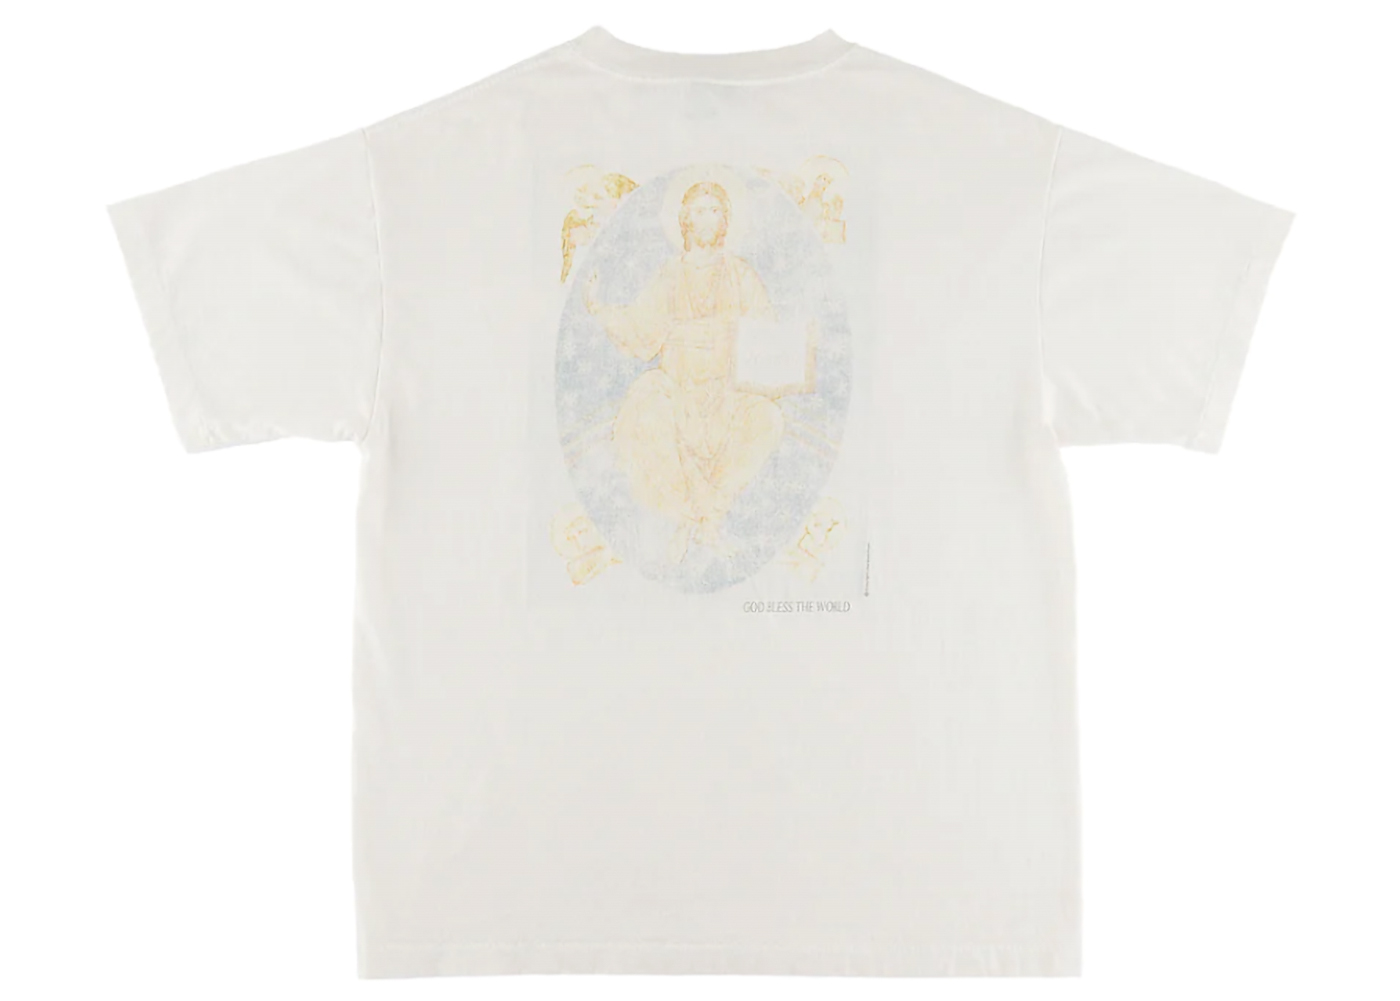 Saint Mxxxxxx Holy Mother T-Shirt Vintage White